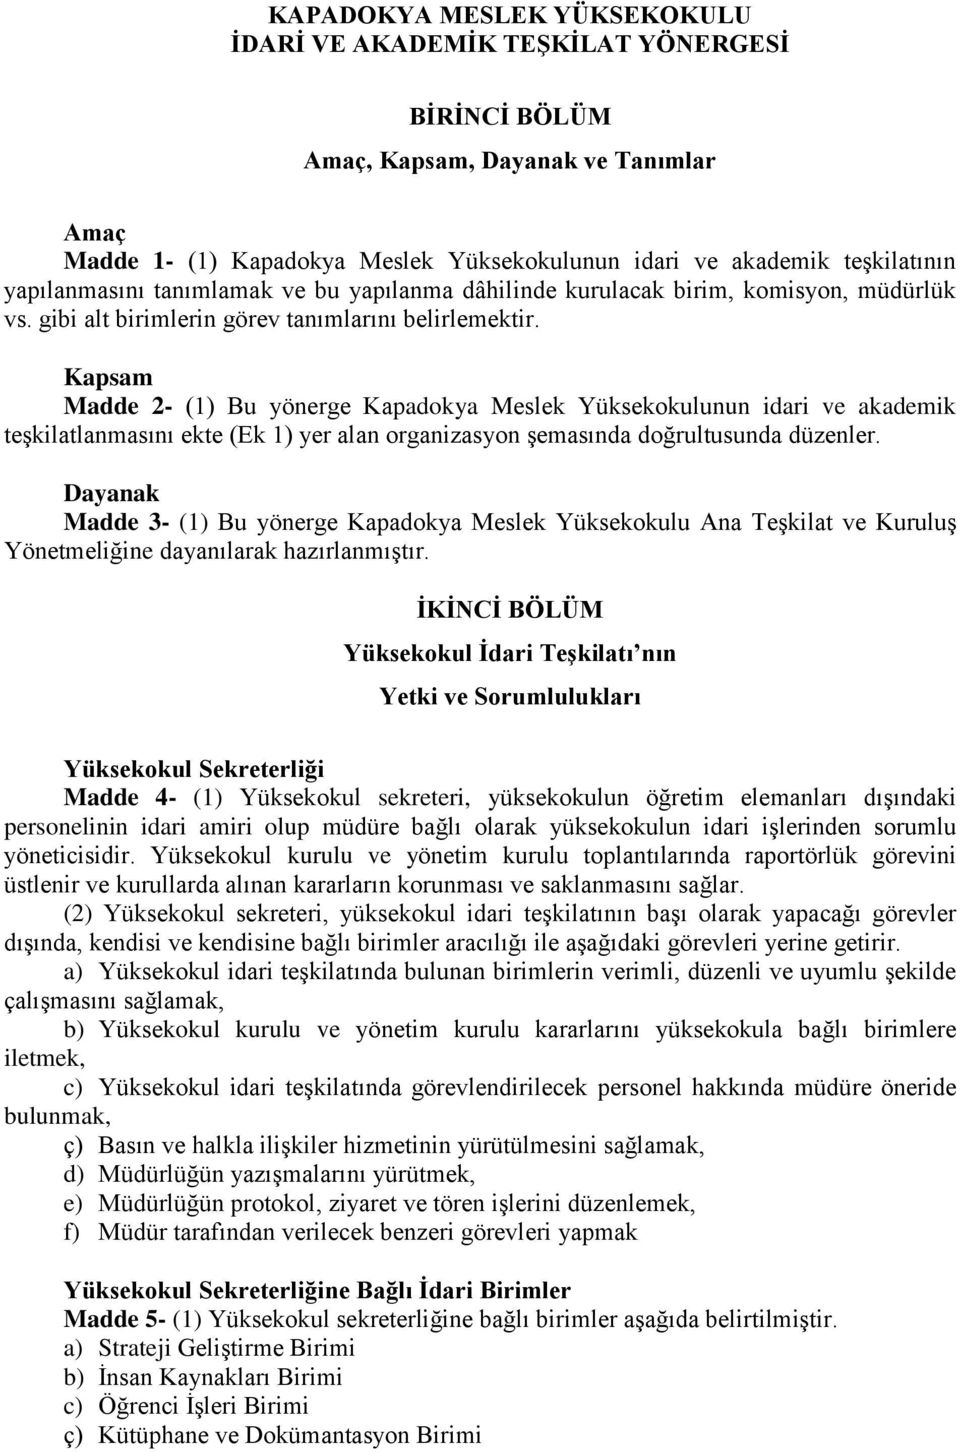 Kapsam Madde 2- (1) Bu yönerge Kapadokya Meslek Yüksekokulunun idari ve akademik teşkilatlanmasını ekte (Ek 1) yer alan organizasyon şemasında doğrultusunda düzenler.